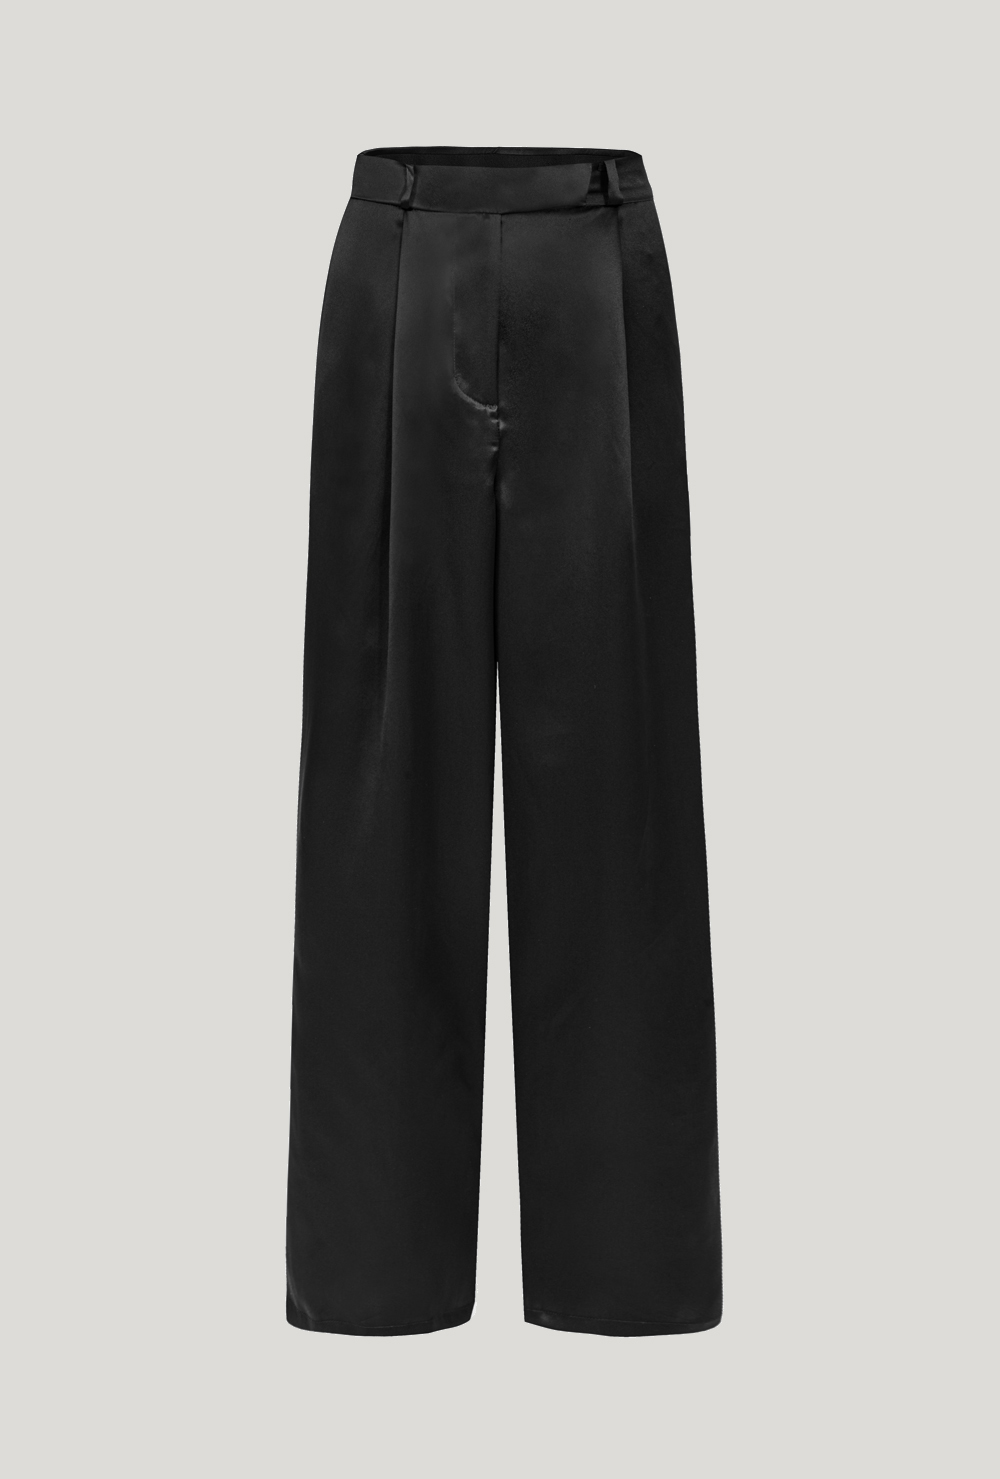 Full-lenght silk trousers made of black satin Długie jedwabne spodnie z czarnej satyny